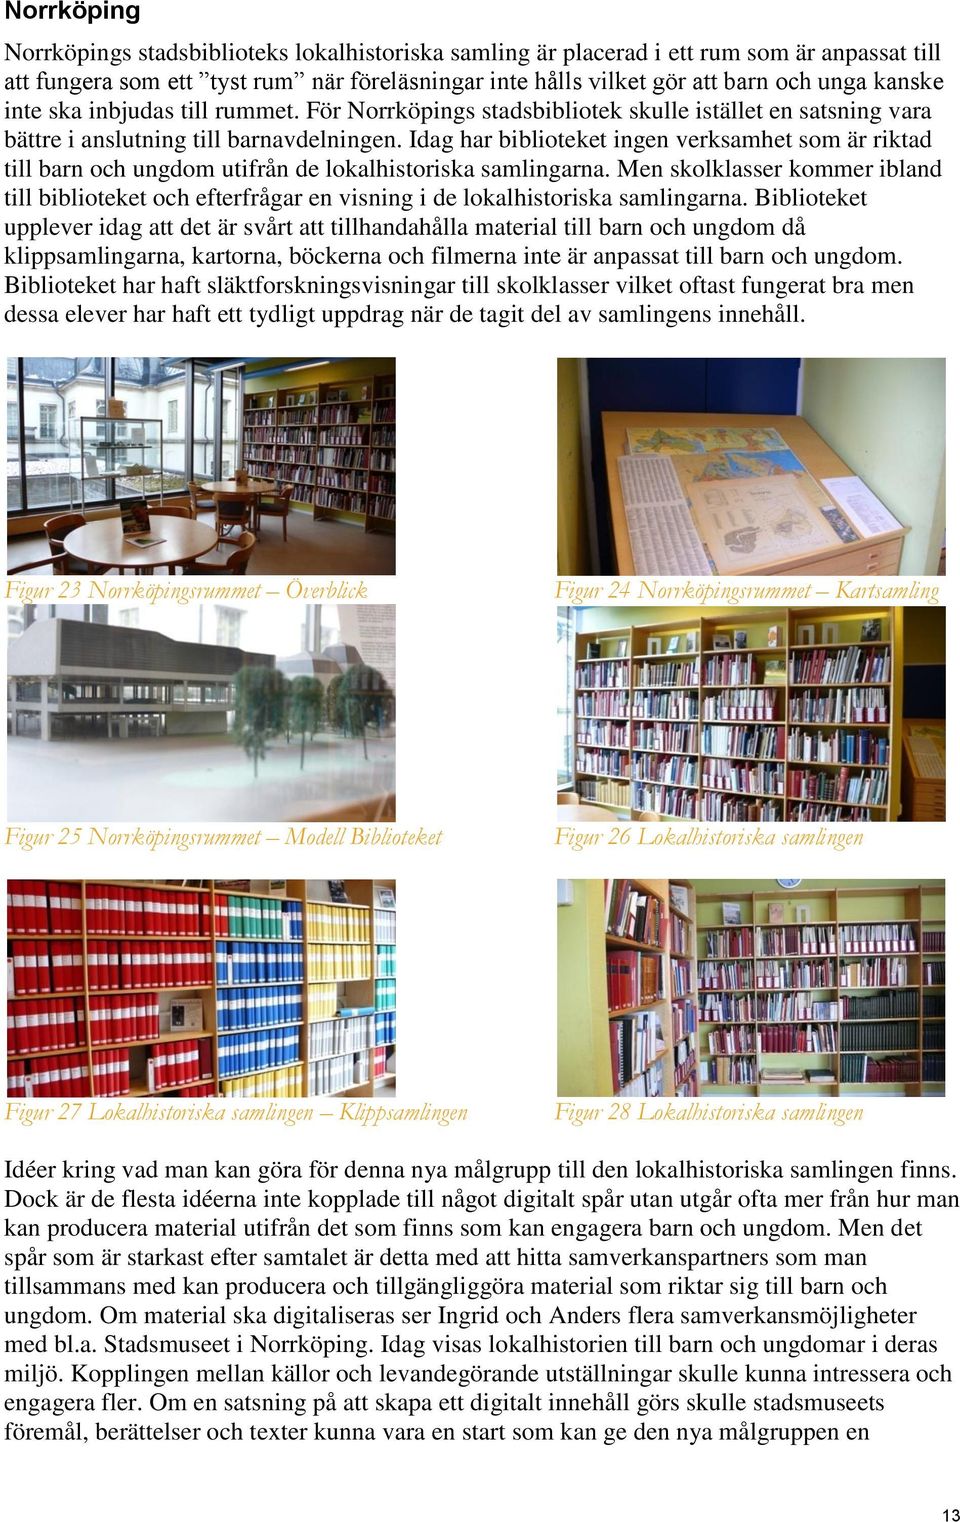 Idag har biblioteket ingen verksamhet som är riktad till barn och ungdom utifrån de lokalhistoriska samlingarna.